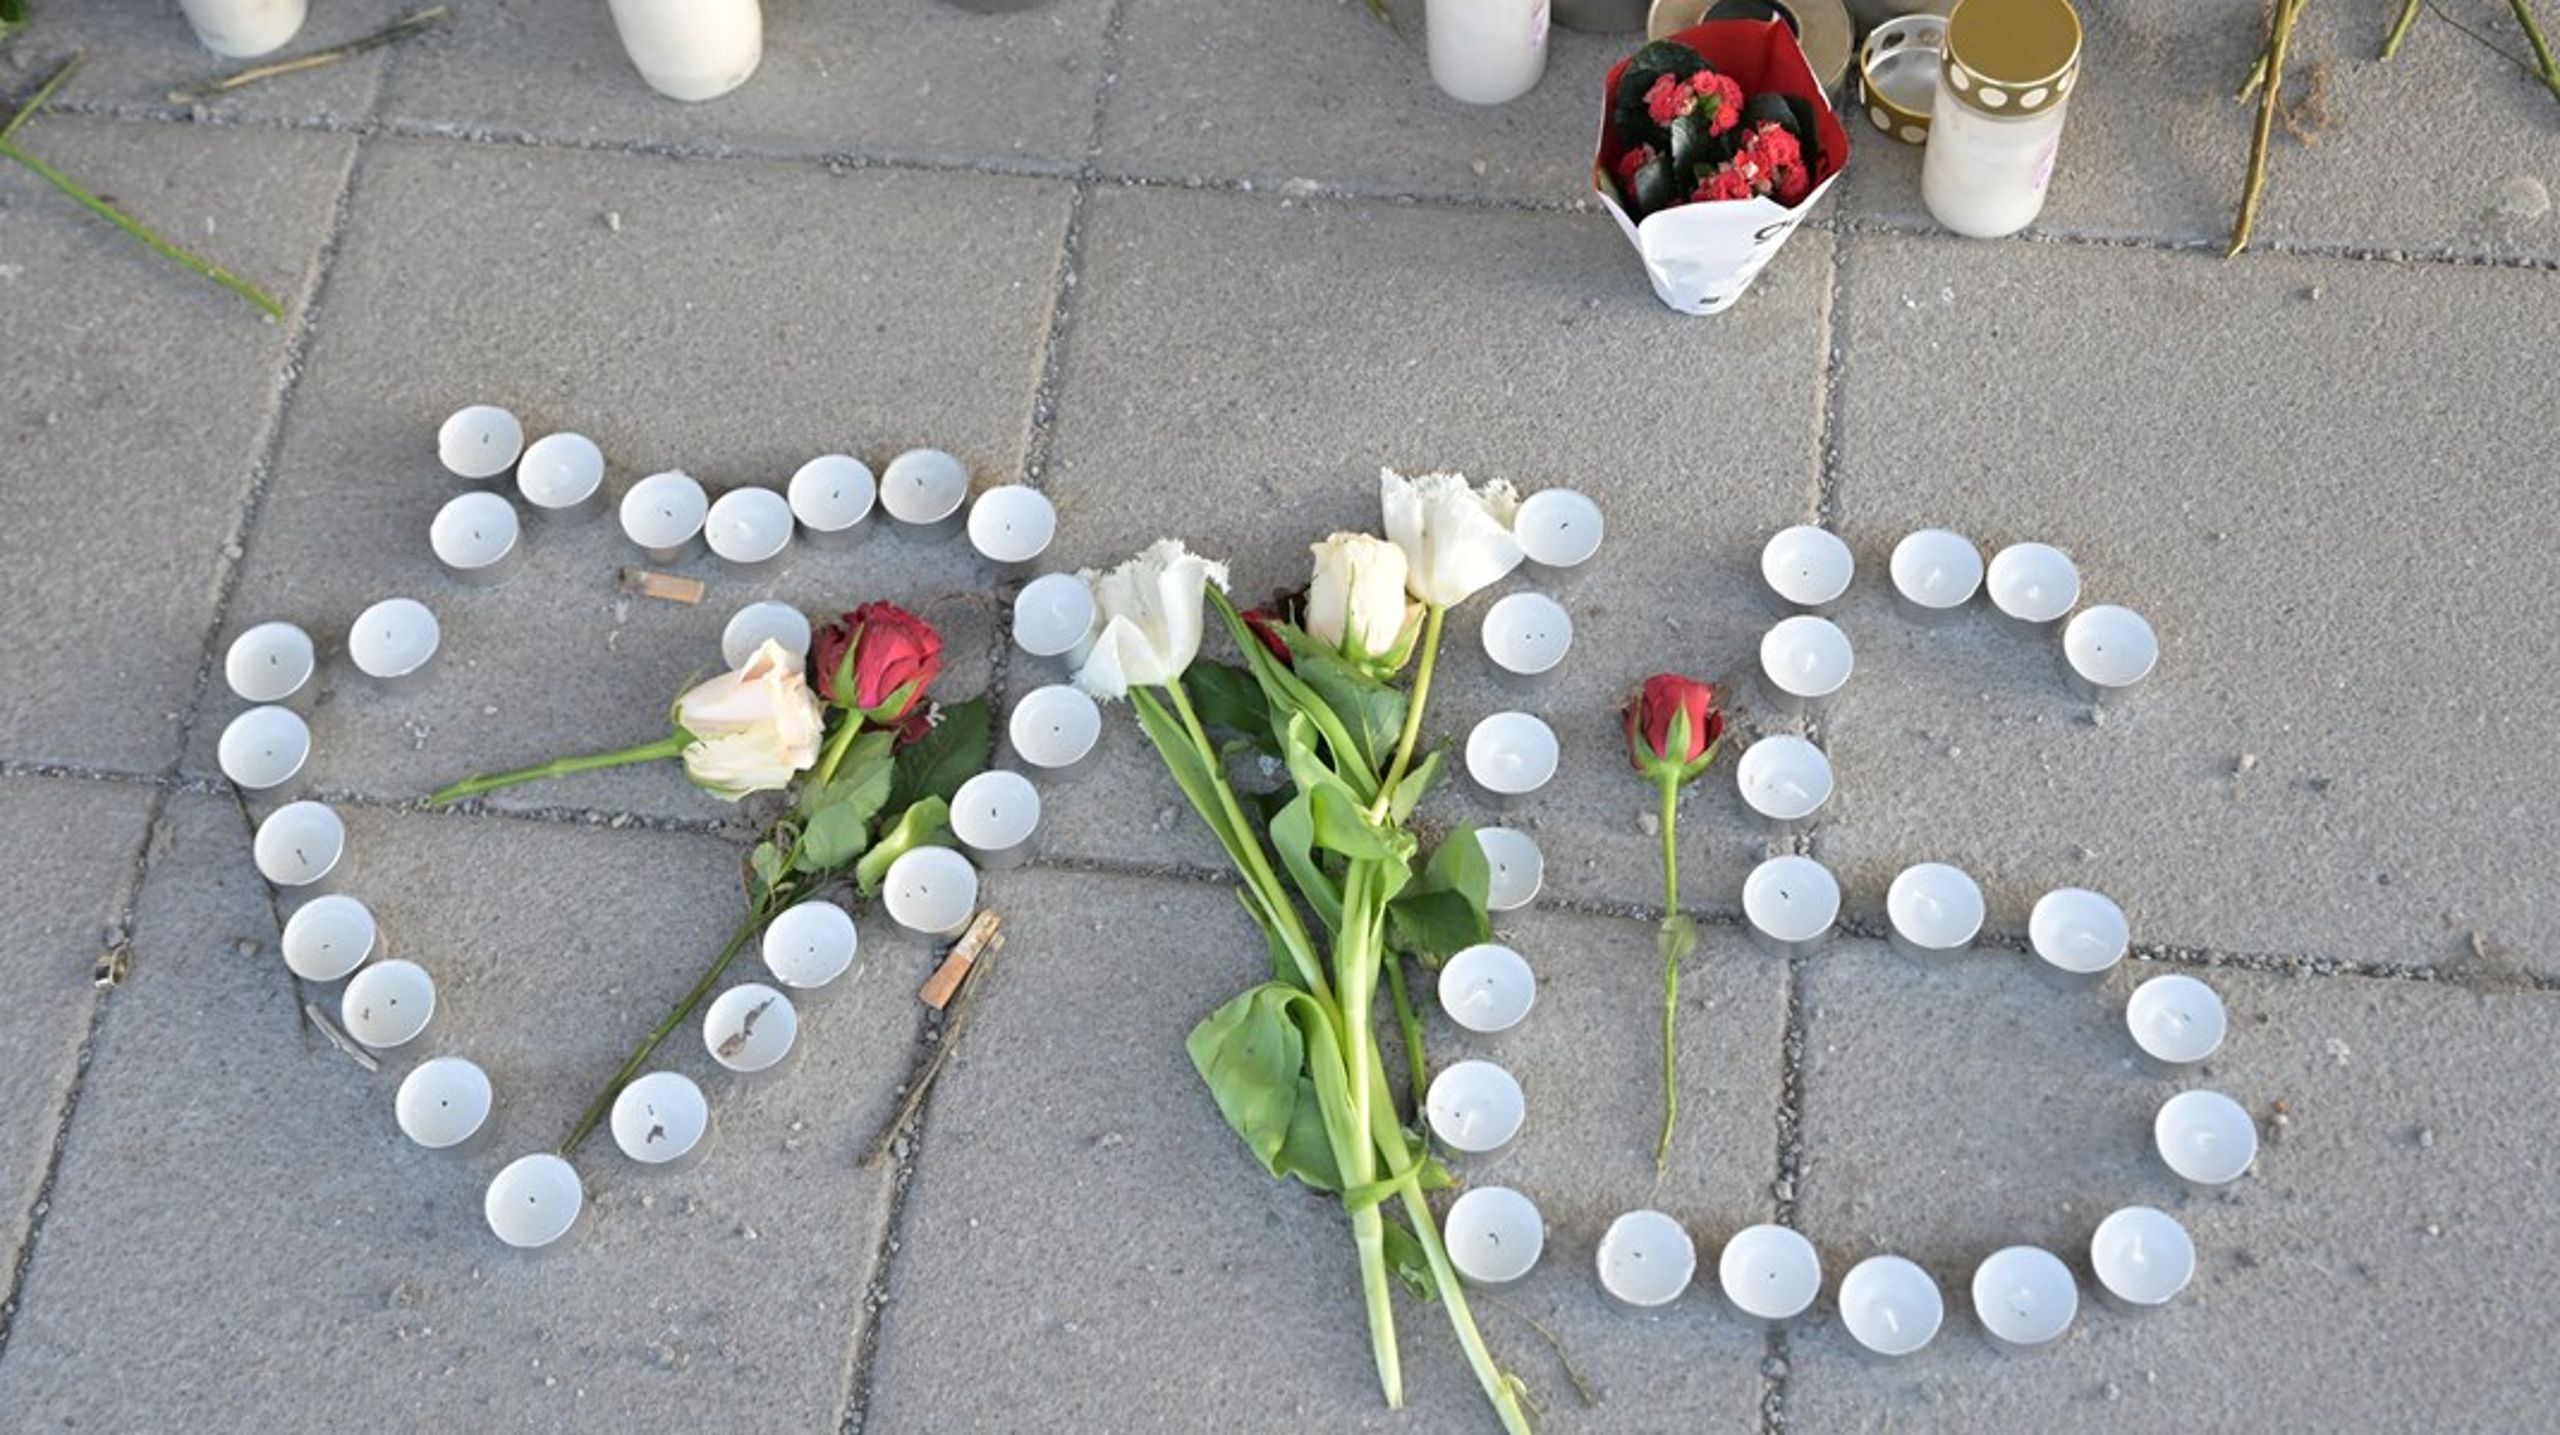 Efter att en 15-årig pojke skjutits till döds i Skogås skapades en minnesplats. Regeringen vill nu skynda på åtgärder för att förhindra att unga dras in i gängen.